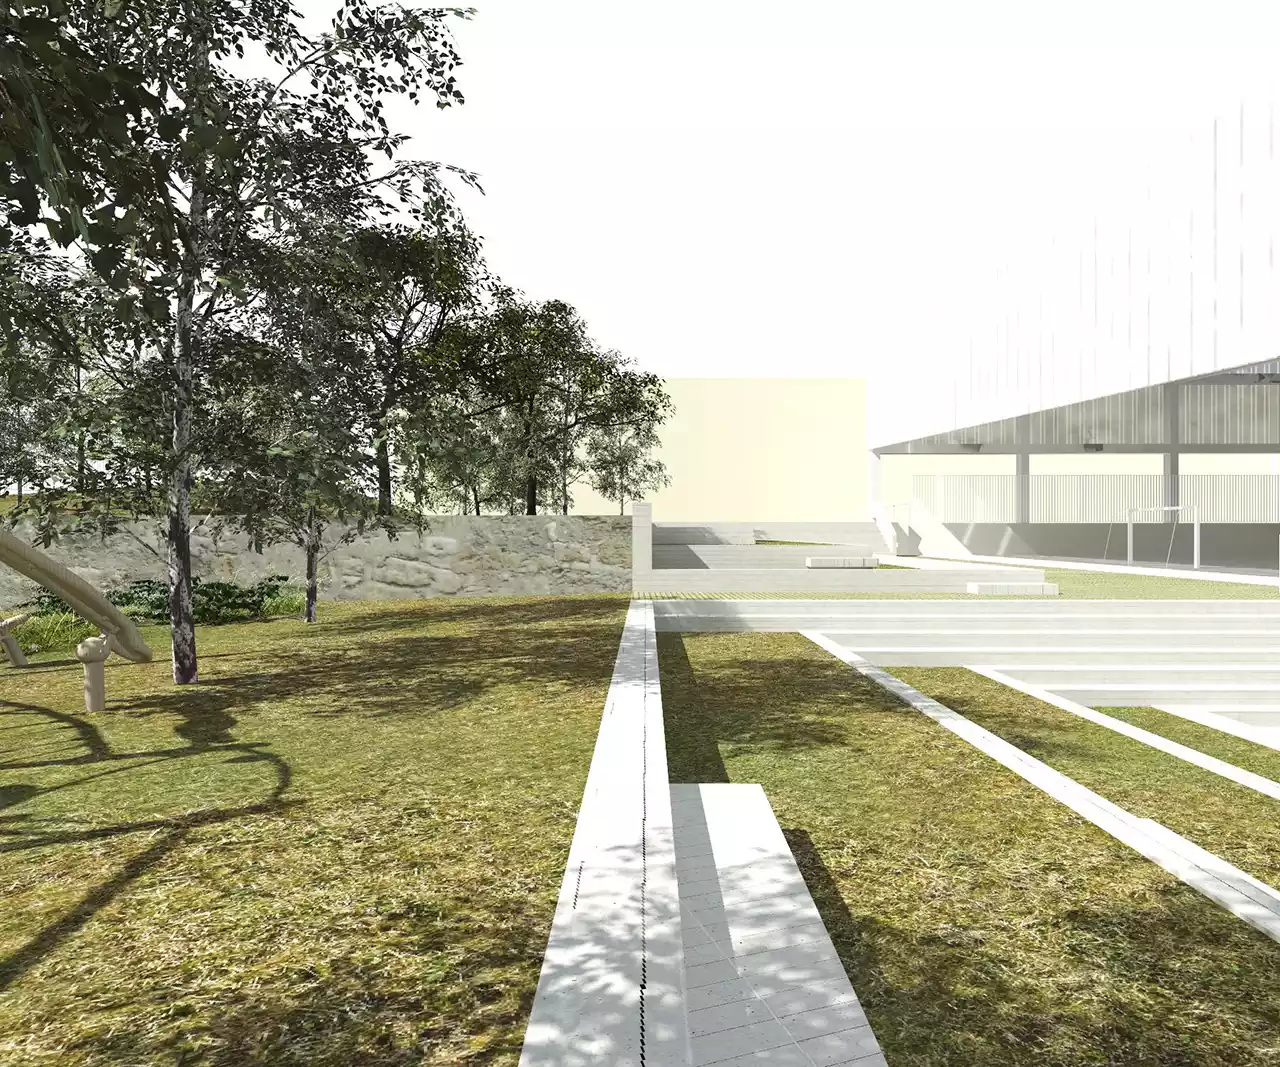 Adjudicadas las obras para renovar la cubierta de la pista polideportiva central de los colegios públicos El Lago y Mendigoiti, que podrían comenzar el próximo mes de junio